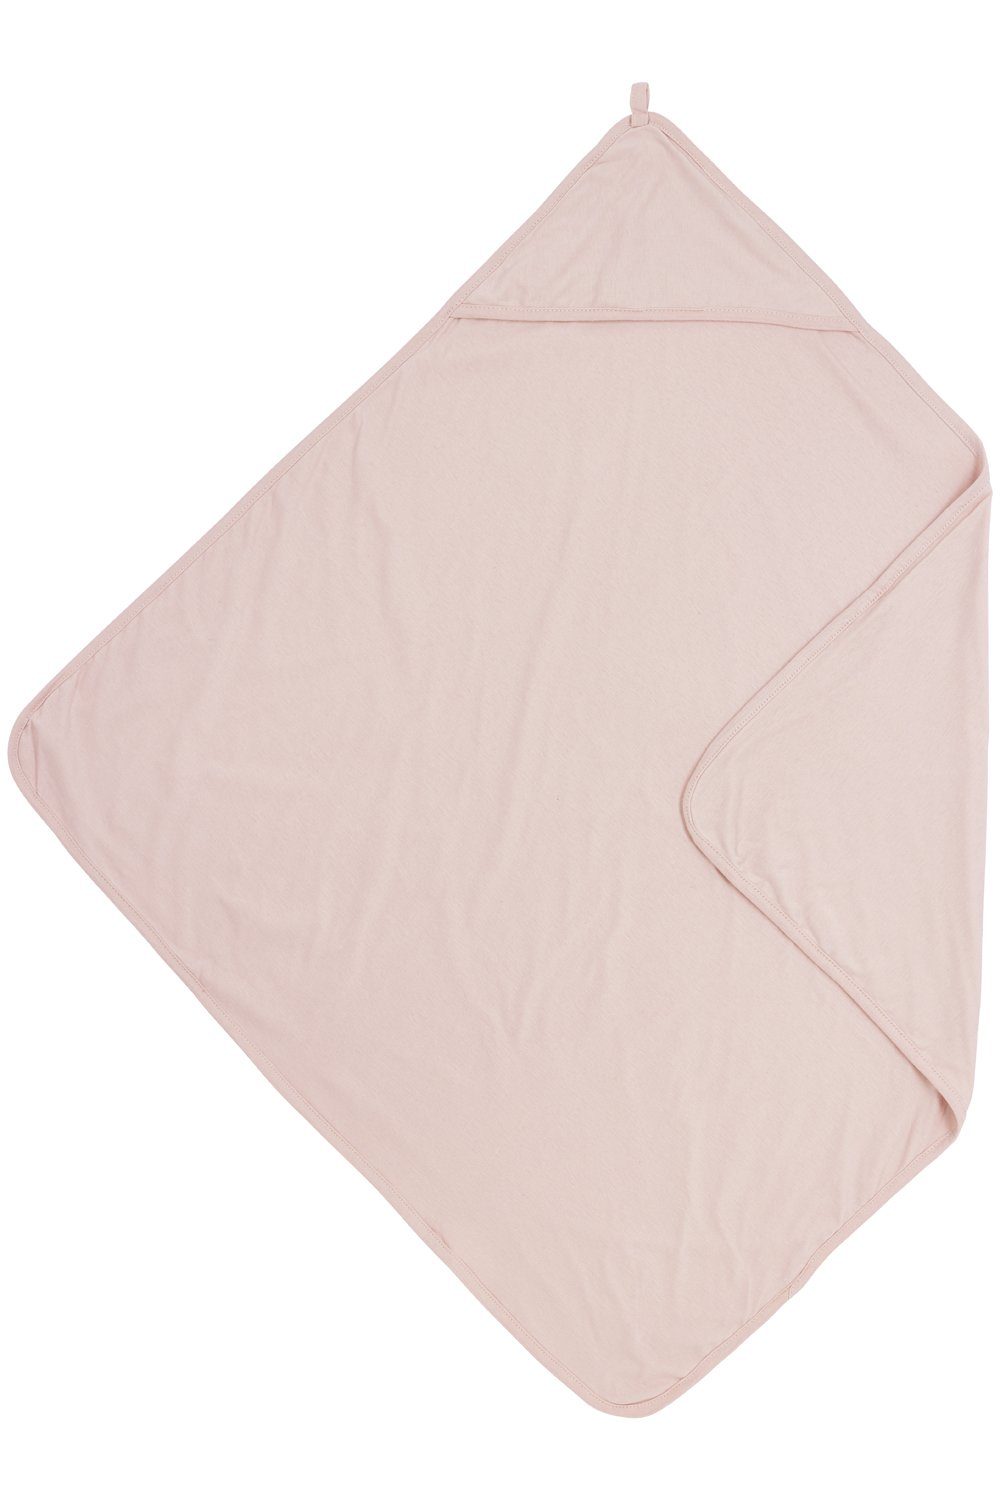 Meyco Baby Kapuzenhandtuch Uni Soft Pink, Jersey (1-St), 80x80cm